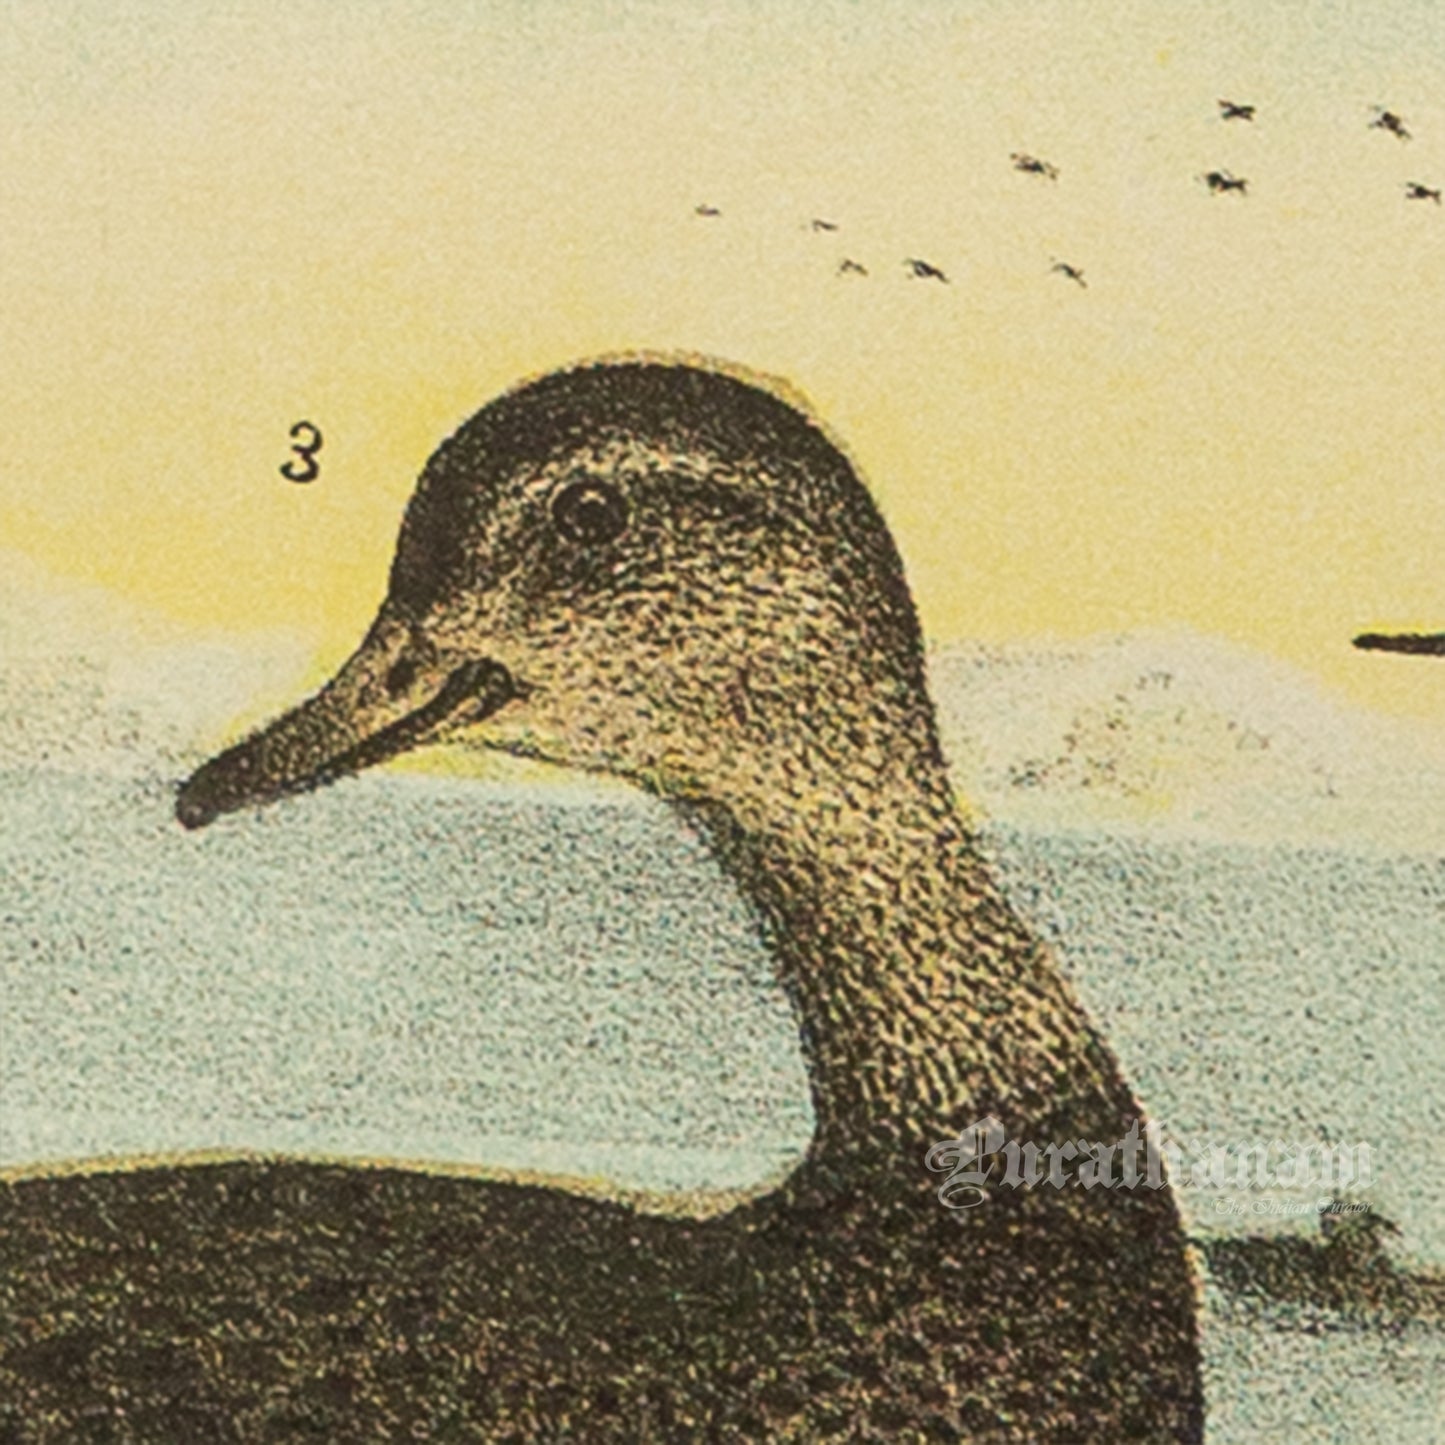 Bird - Chromo lithograph print (Plate - LVIII) by Theodore Jasper -  Bird Art / Avian Art